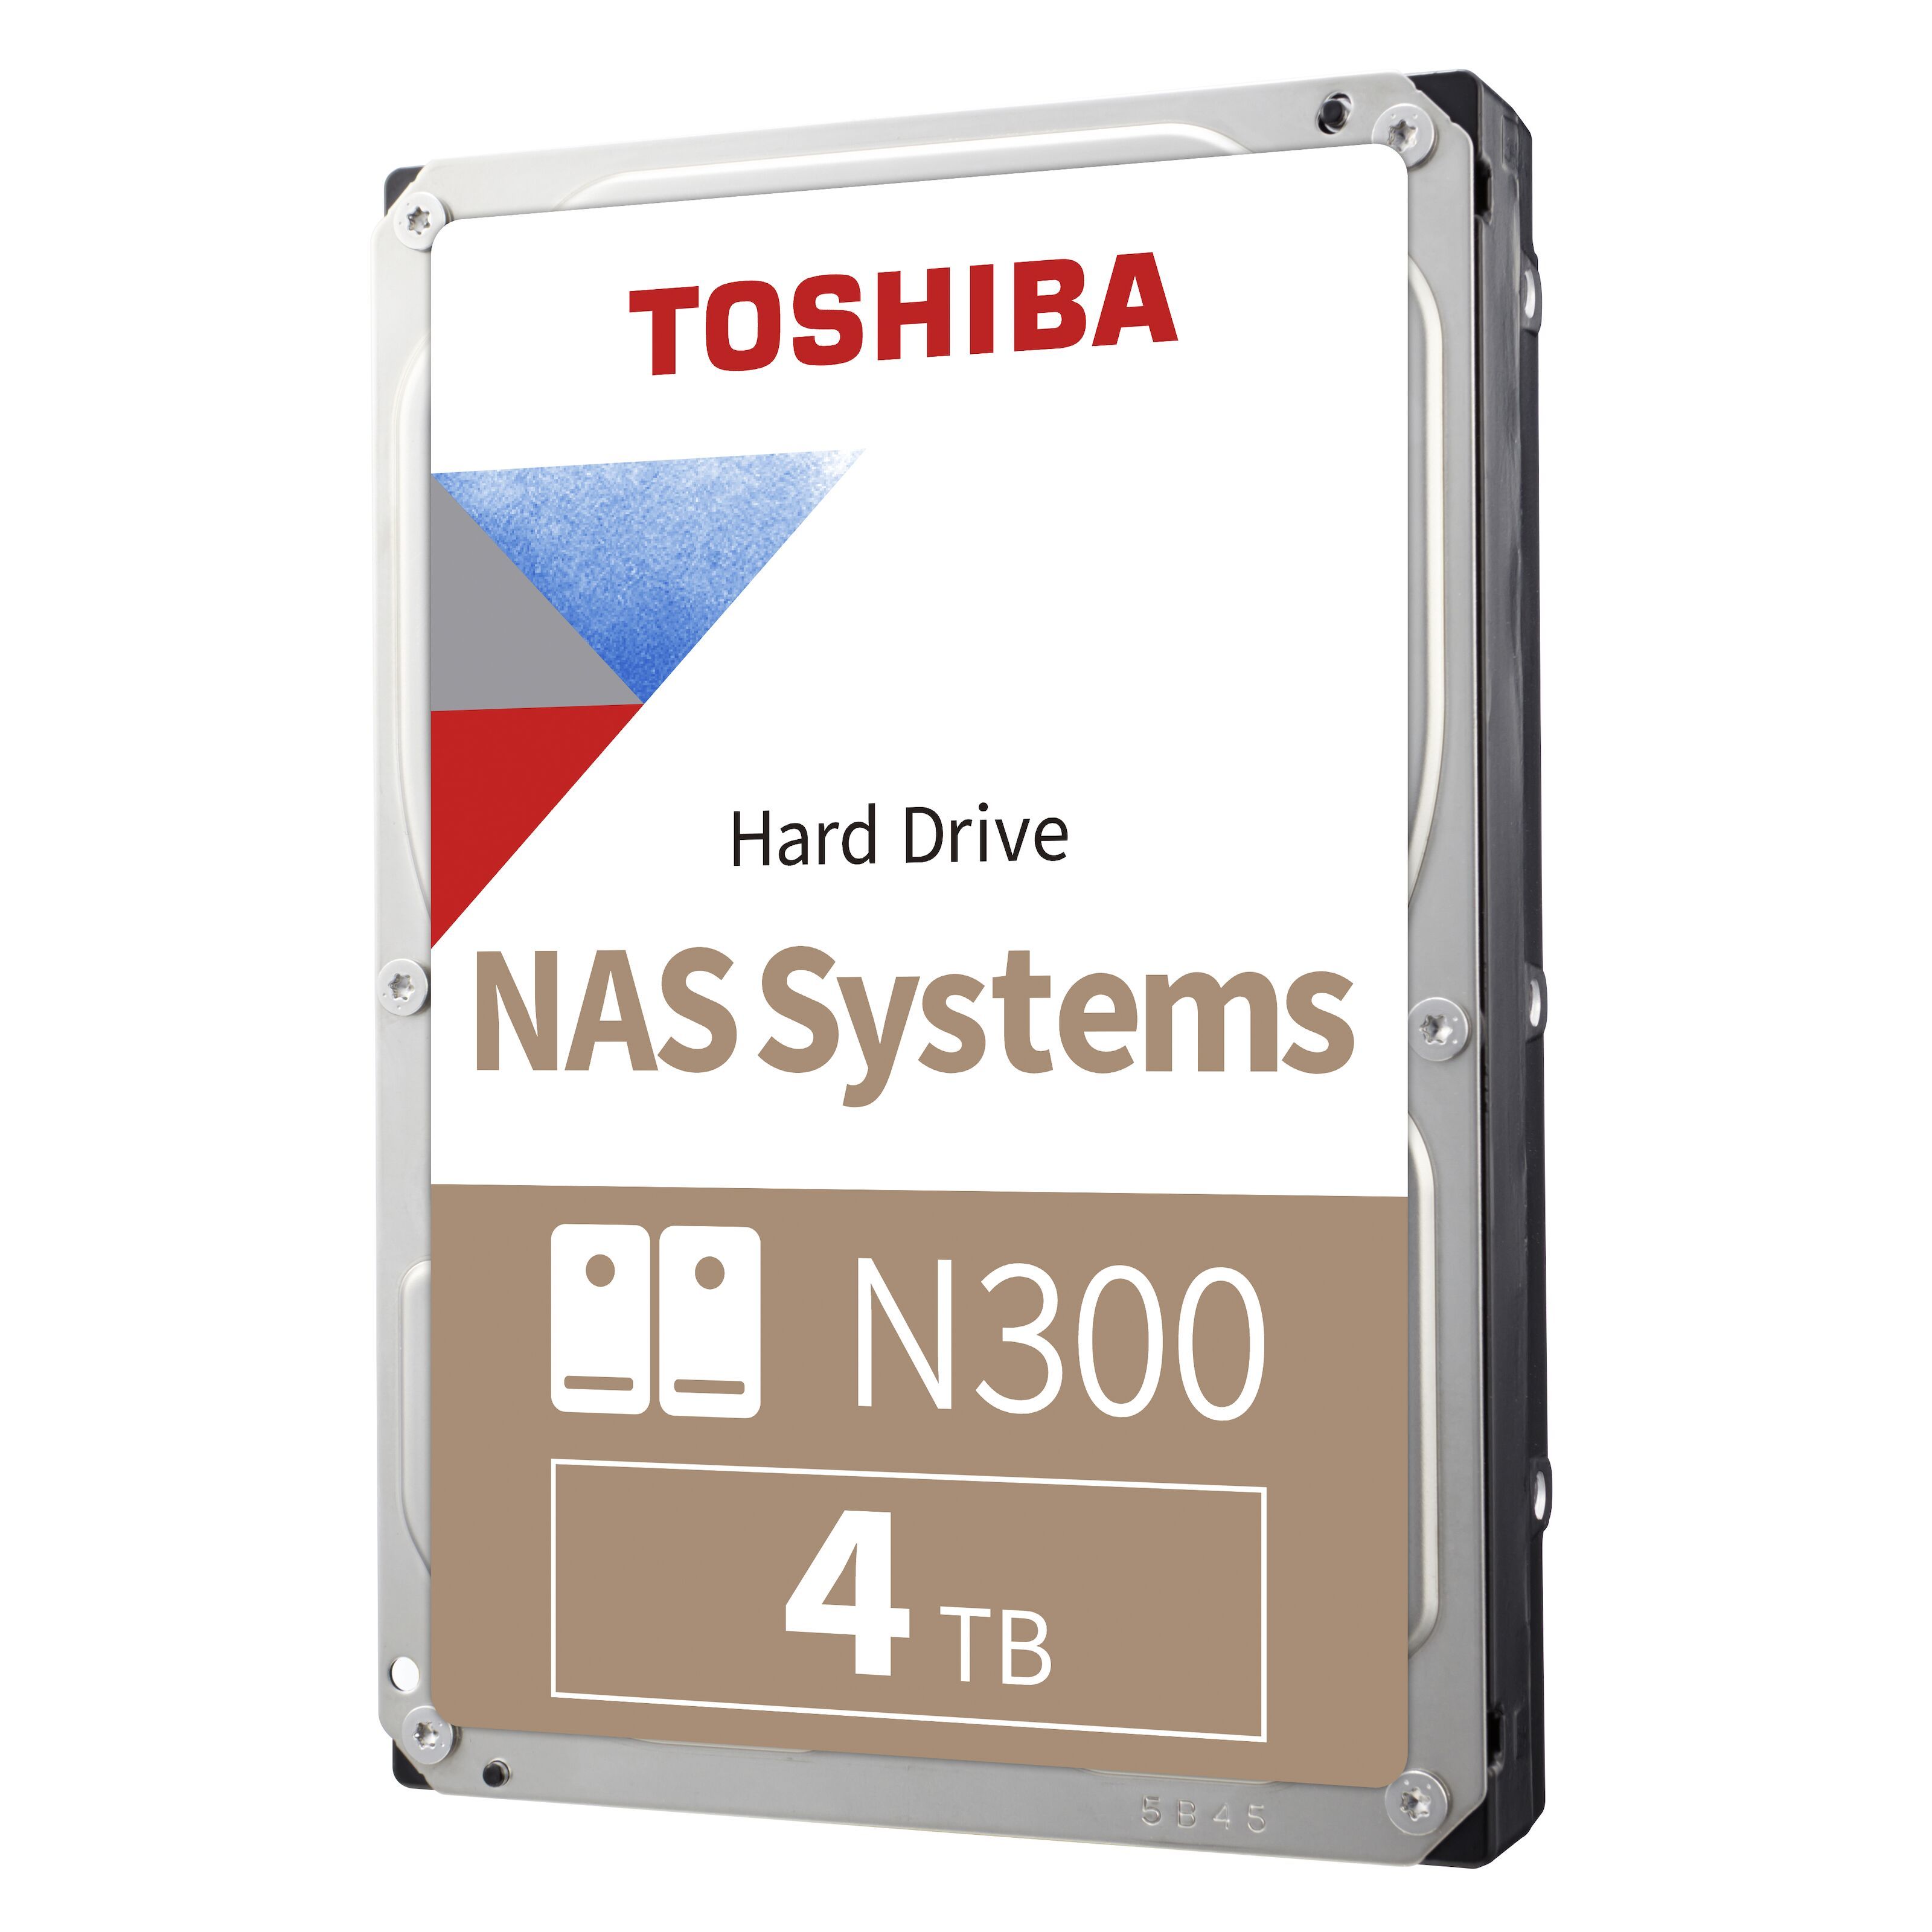 Toshiba N300 Hårddisk för NAS 3,5" 4 TB